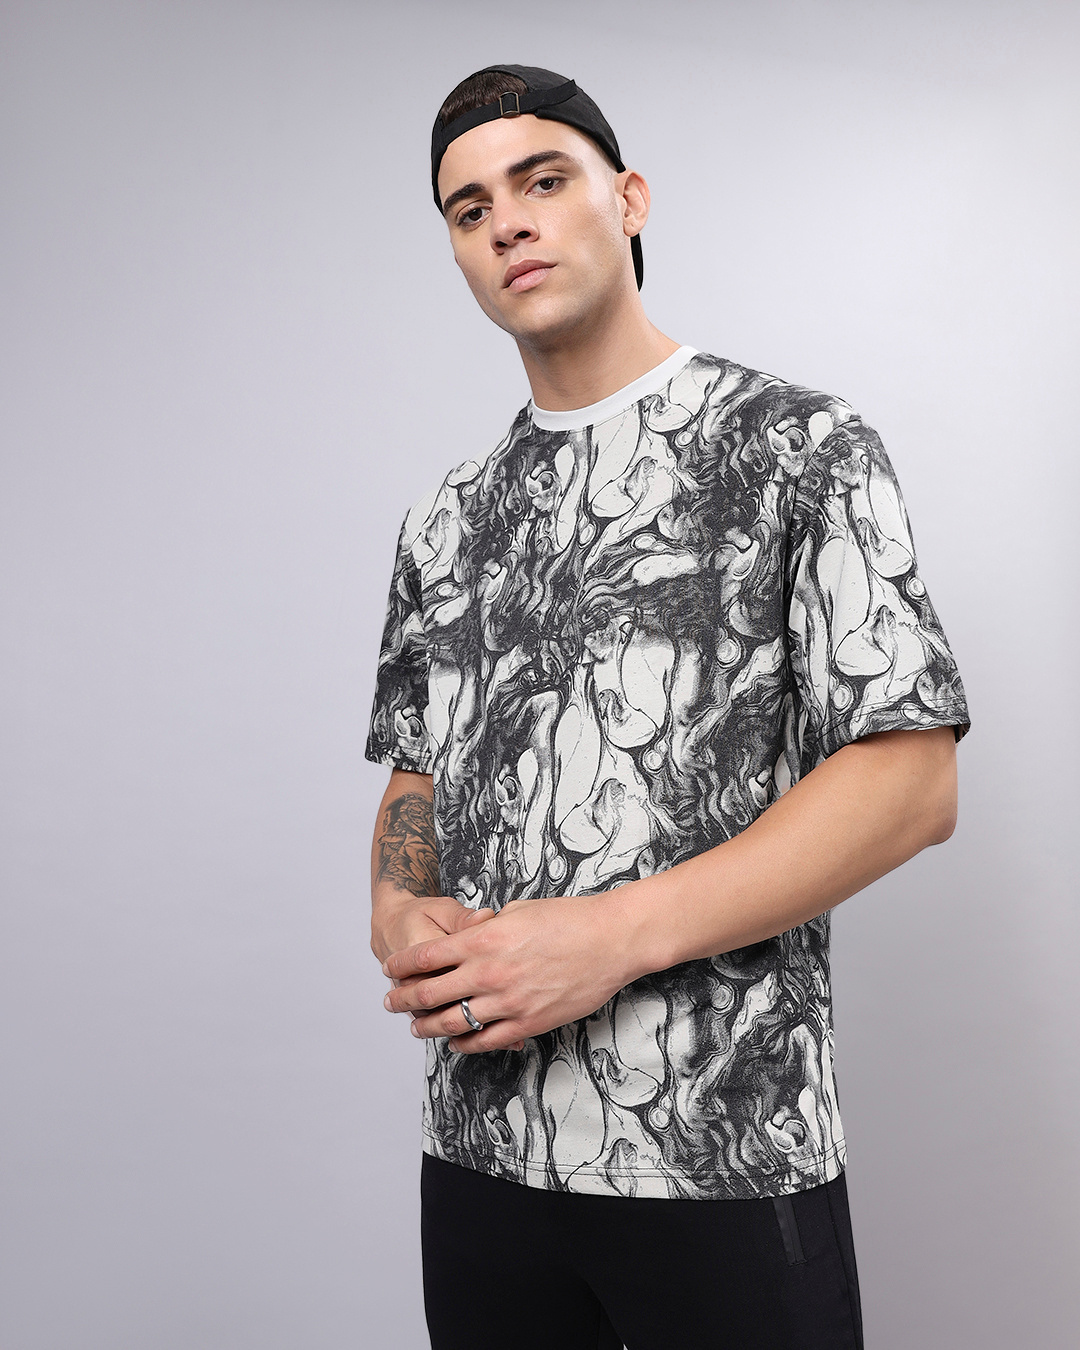 Buy Men's White & Black All Over Printed Oversized T-shirt Online at ...